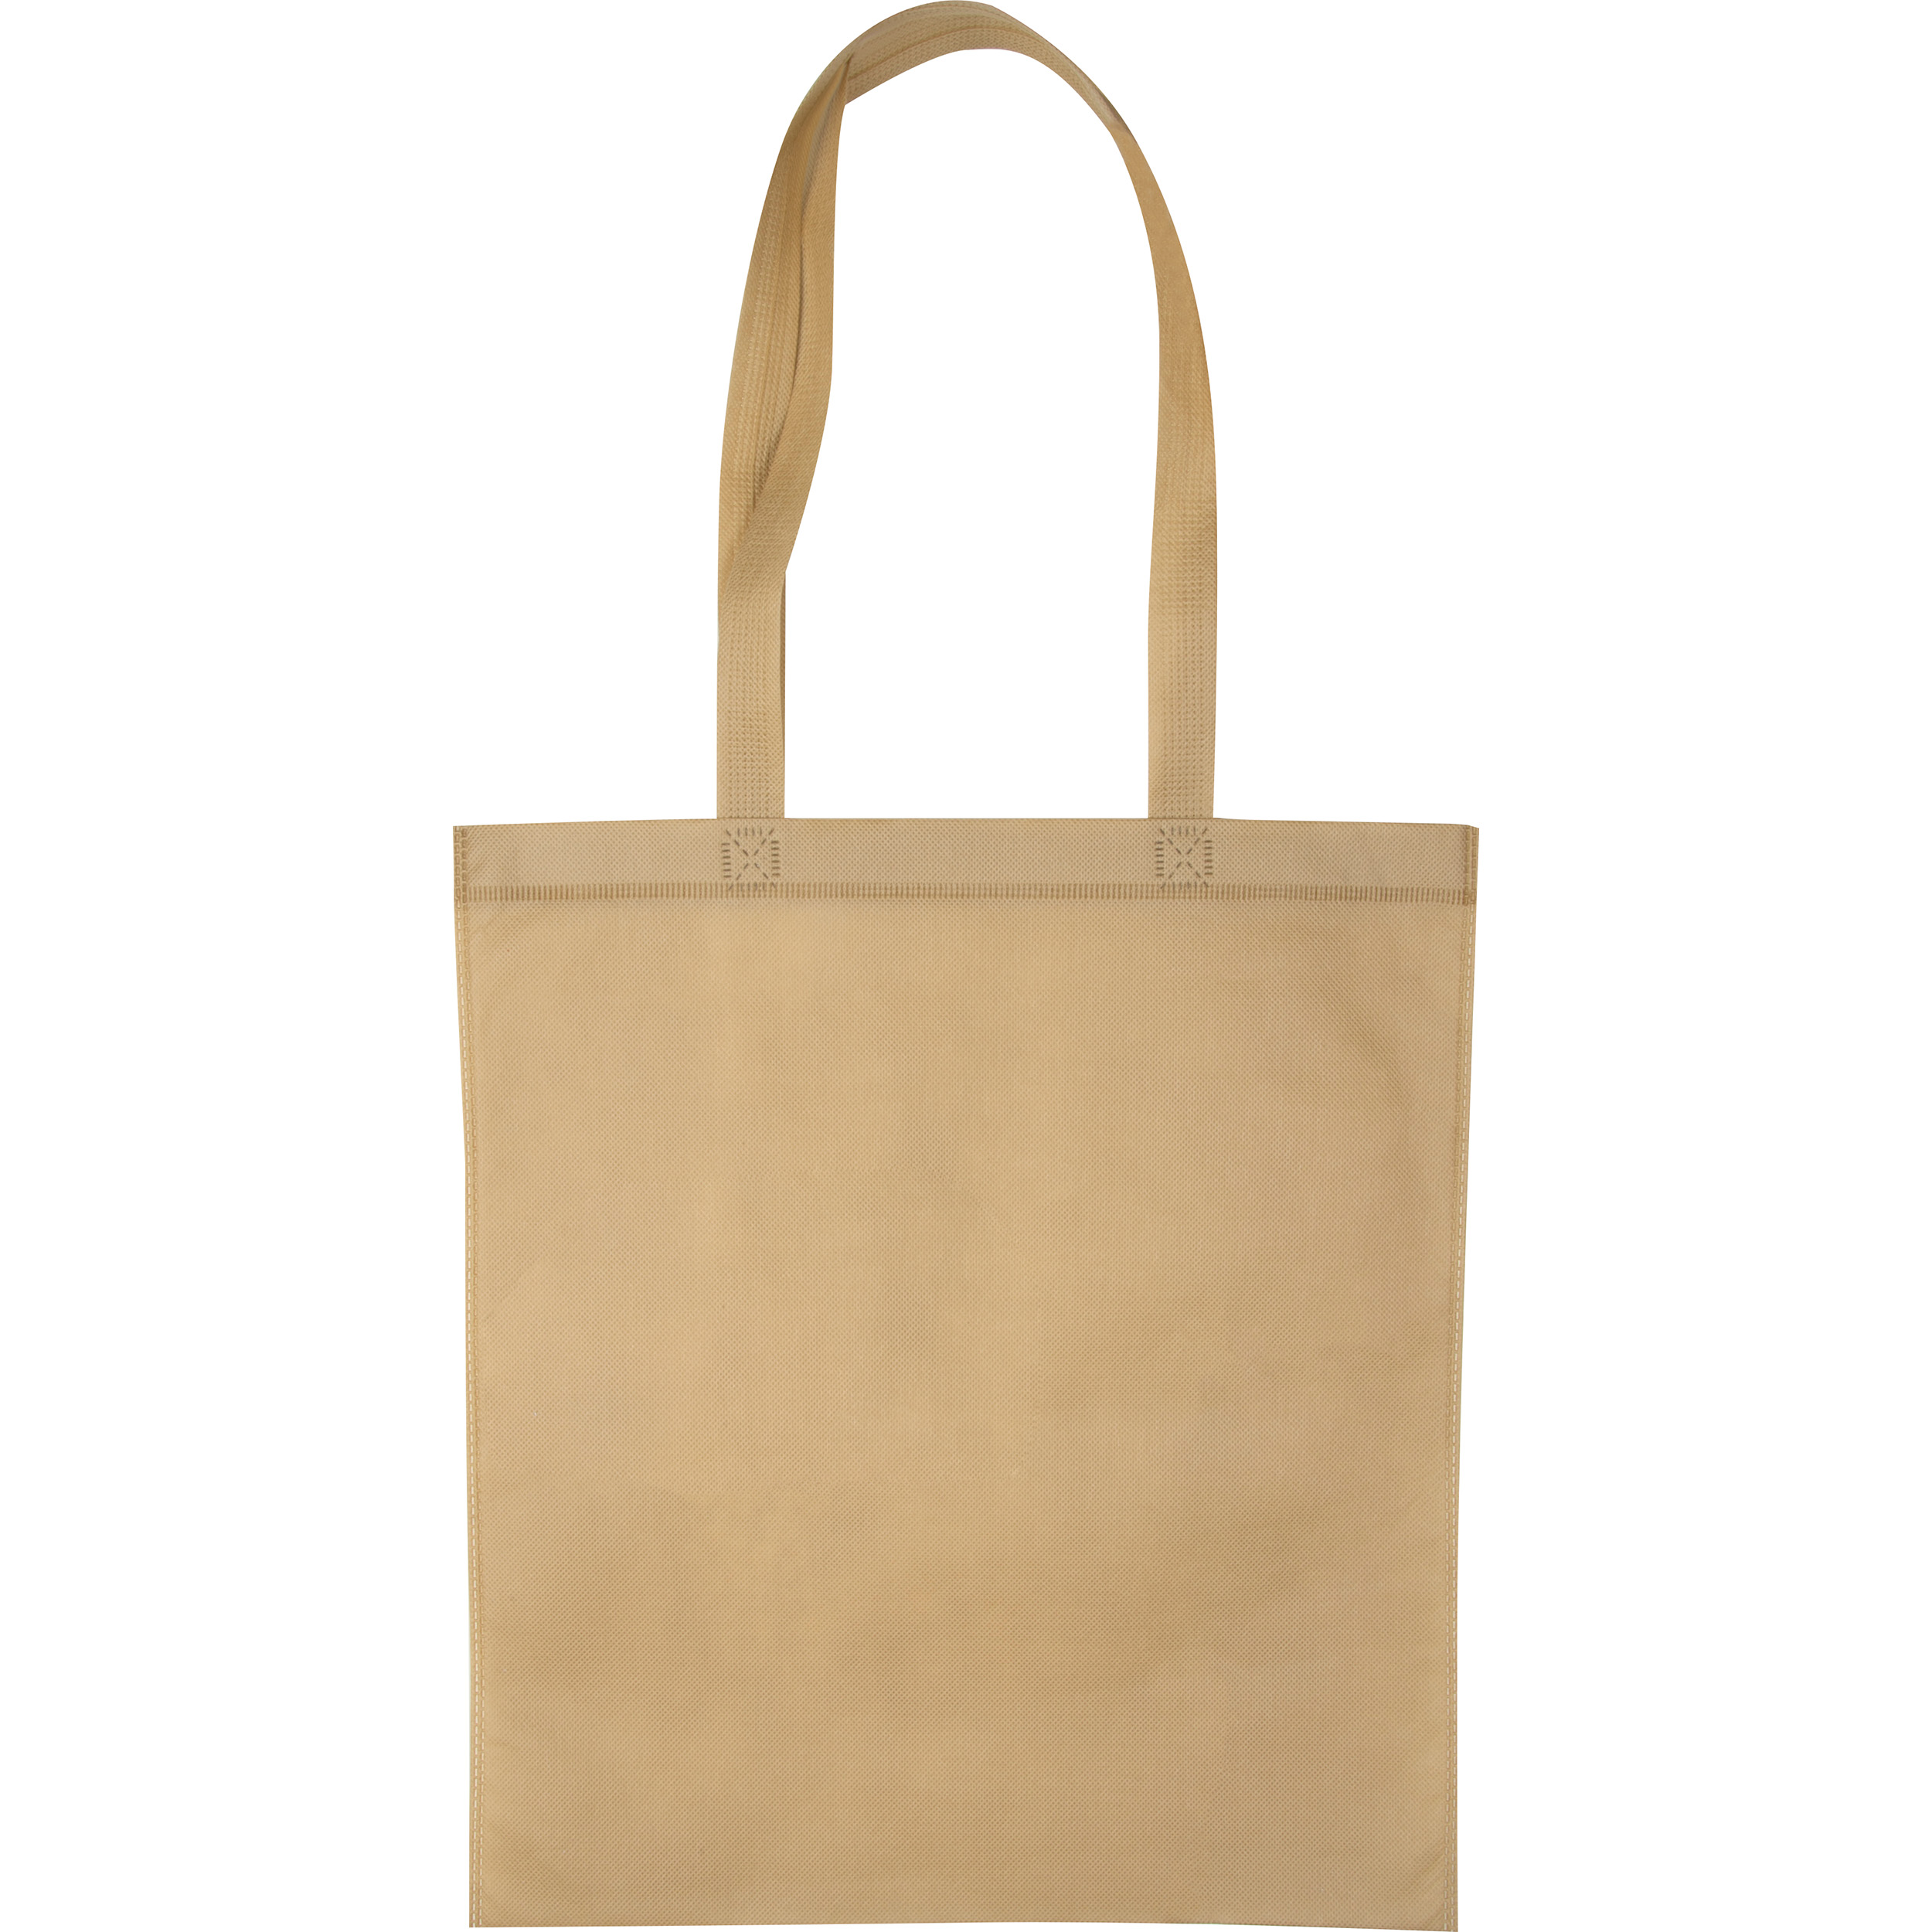 Non woven bag with long handles